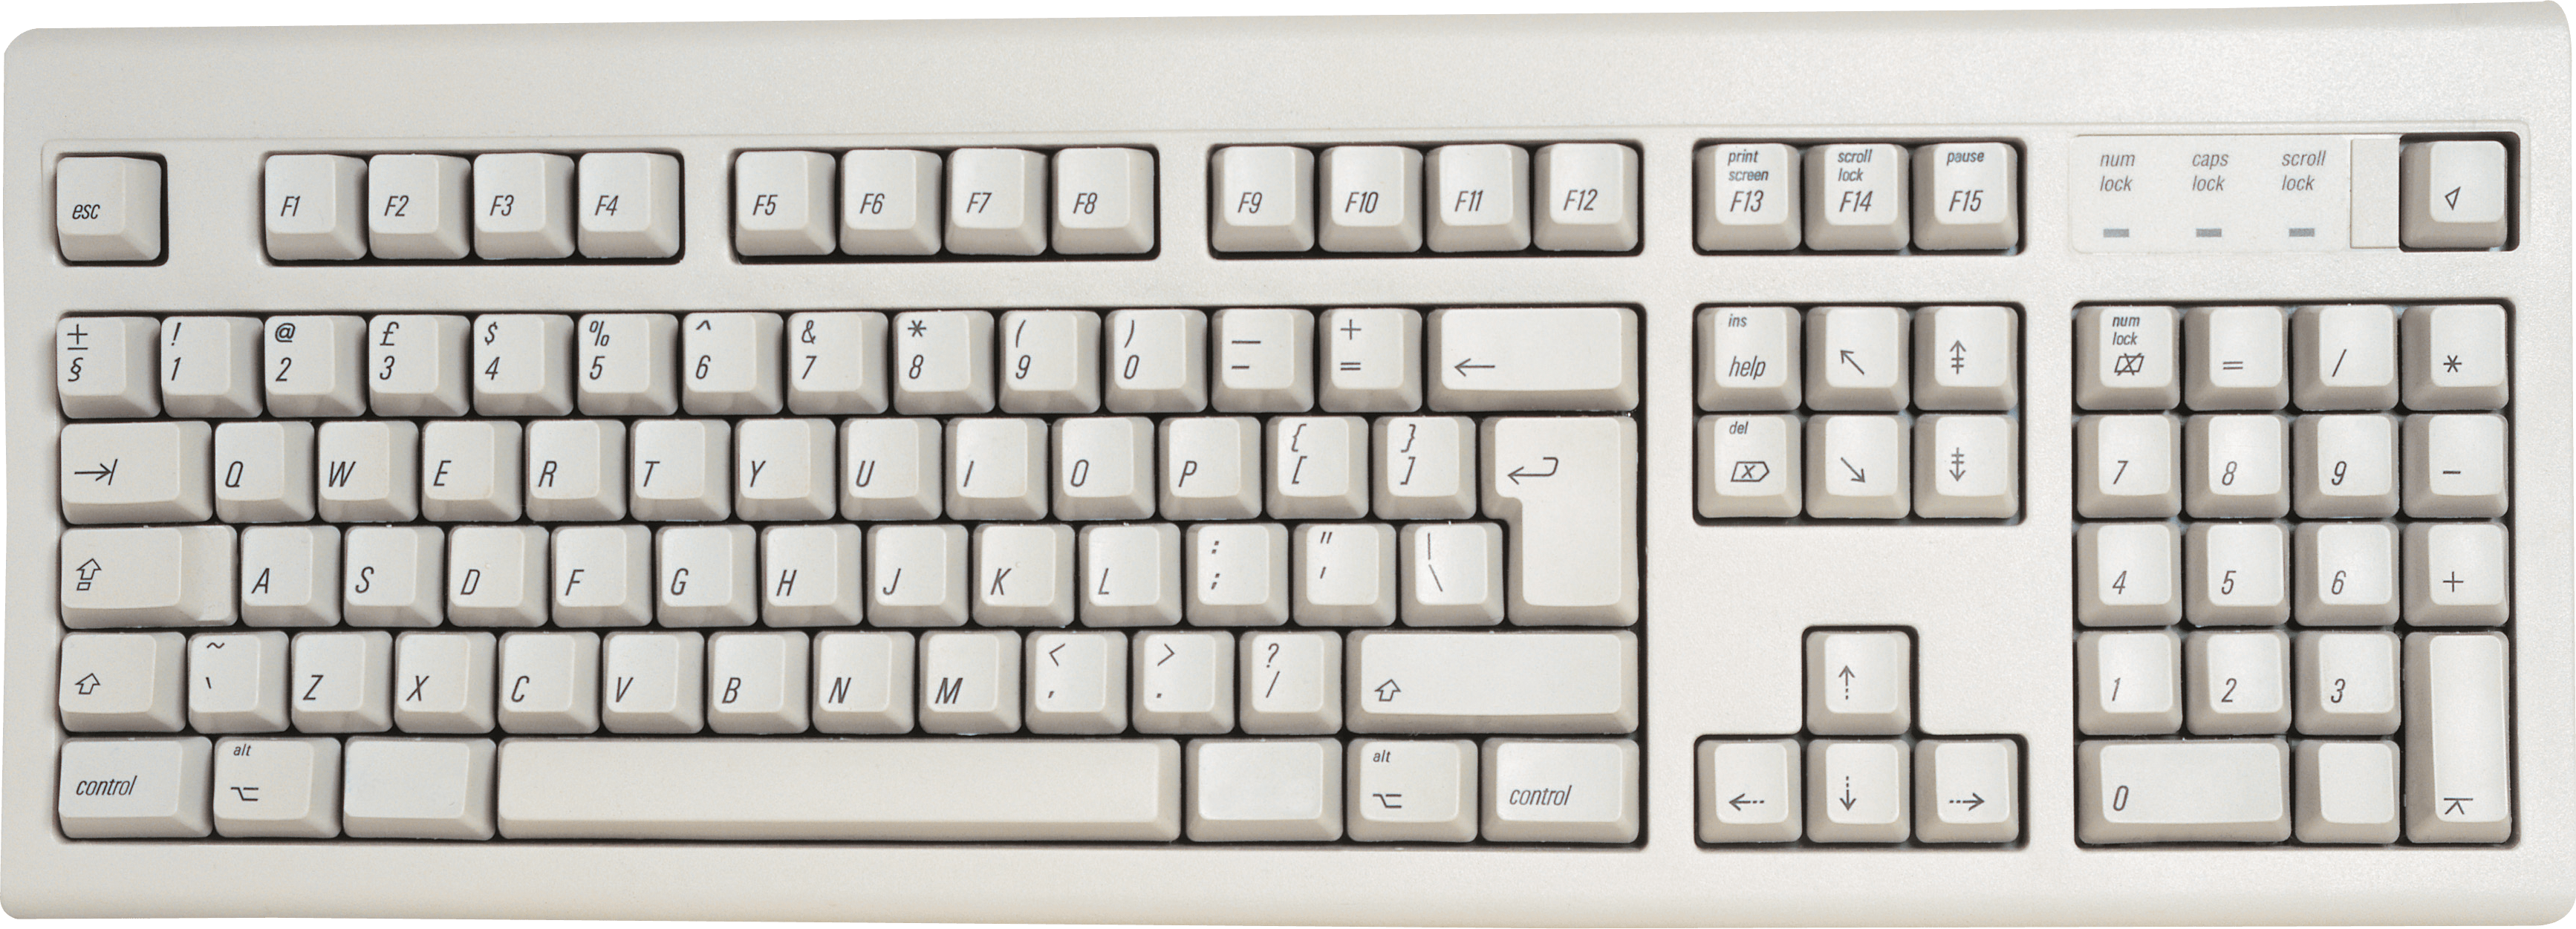 White Keyboard Png Image PNG Image